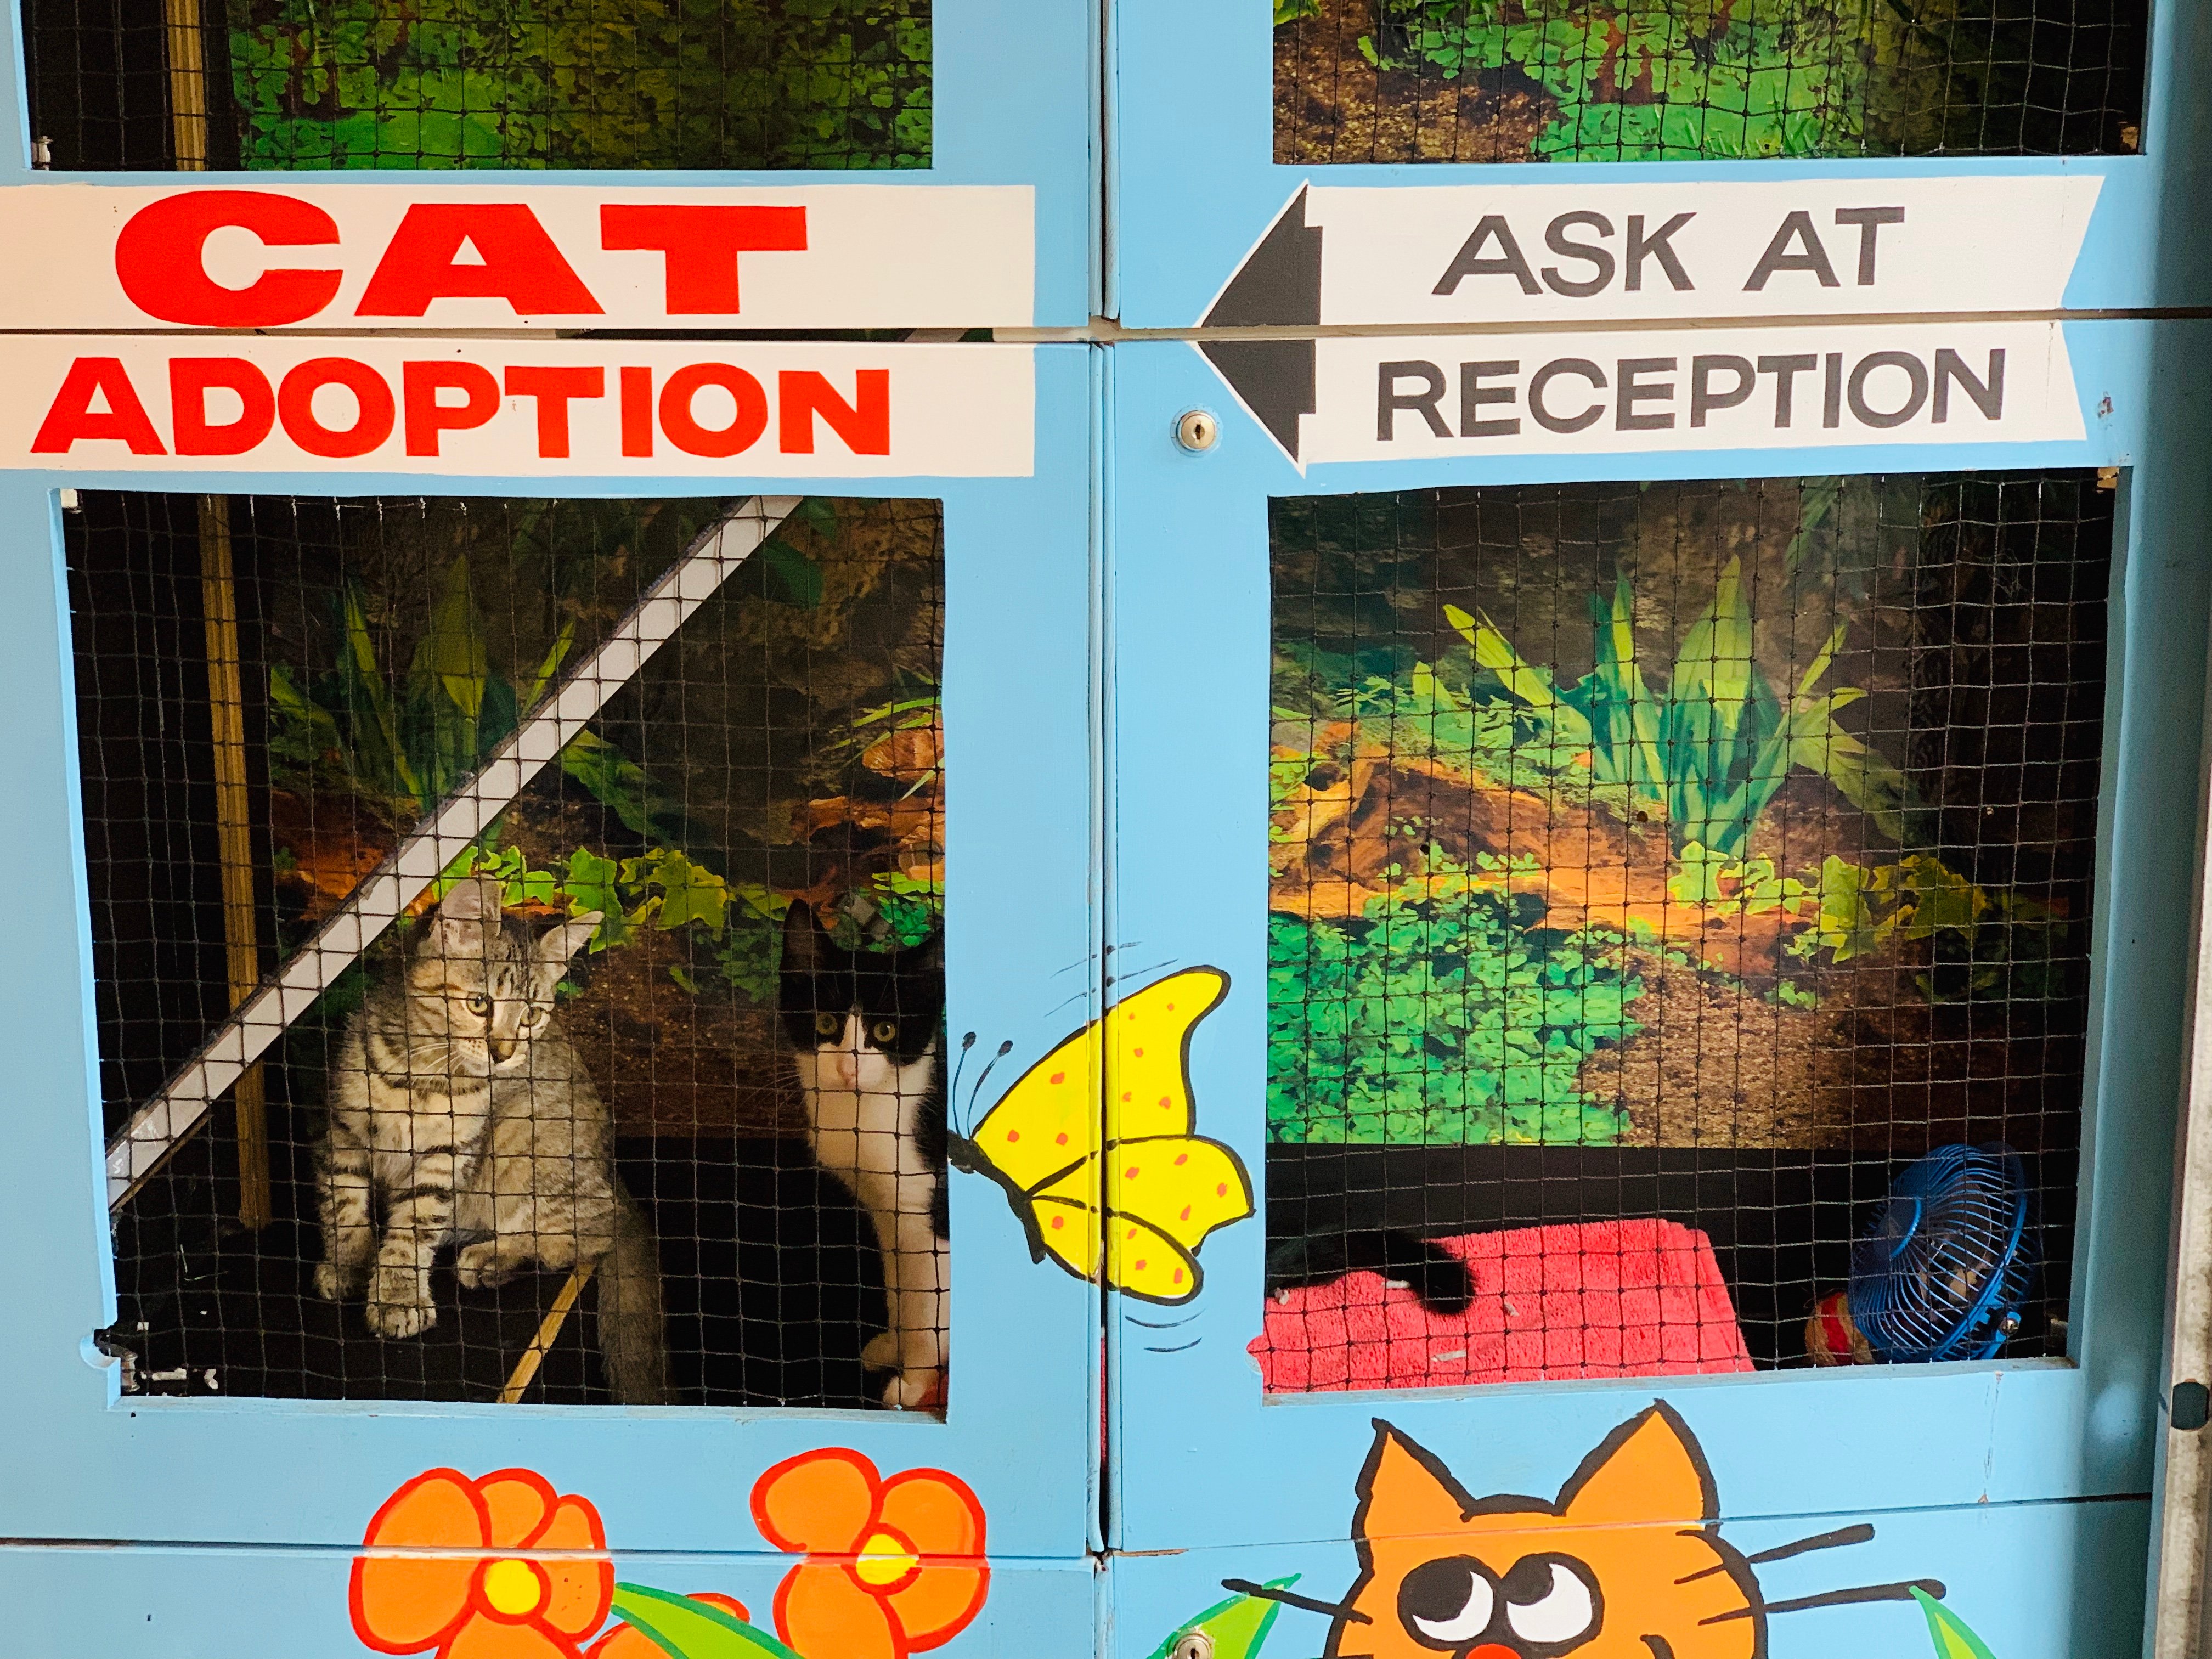 Cat Adoption